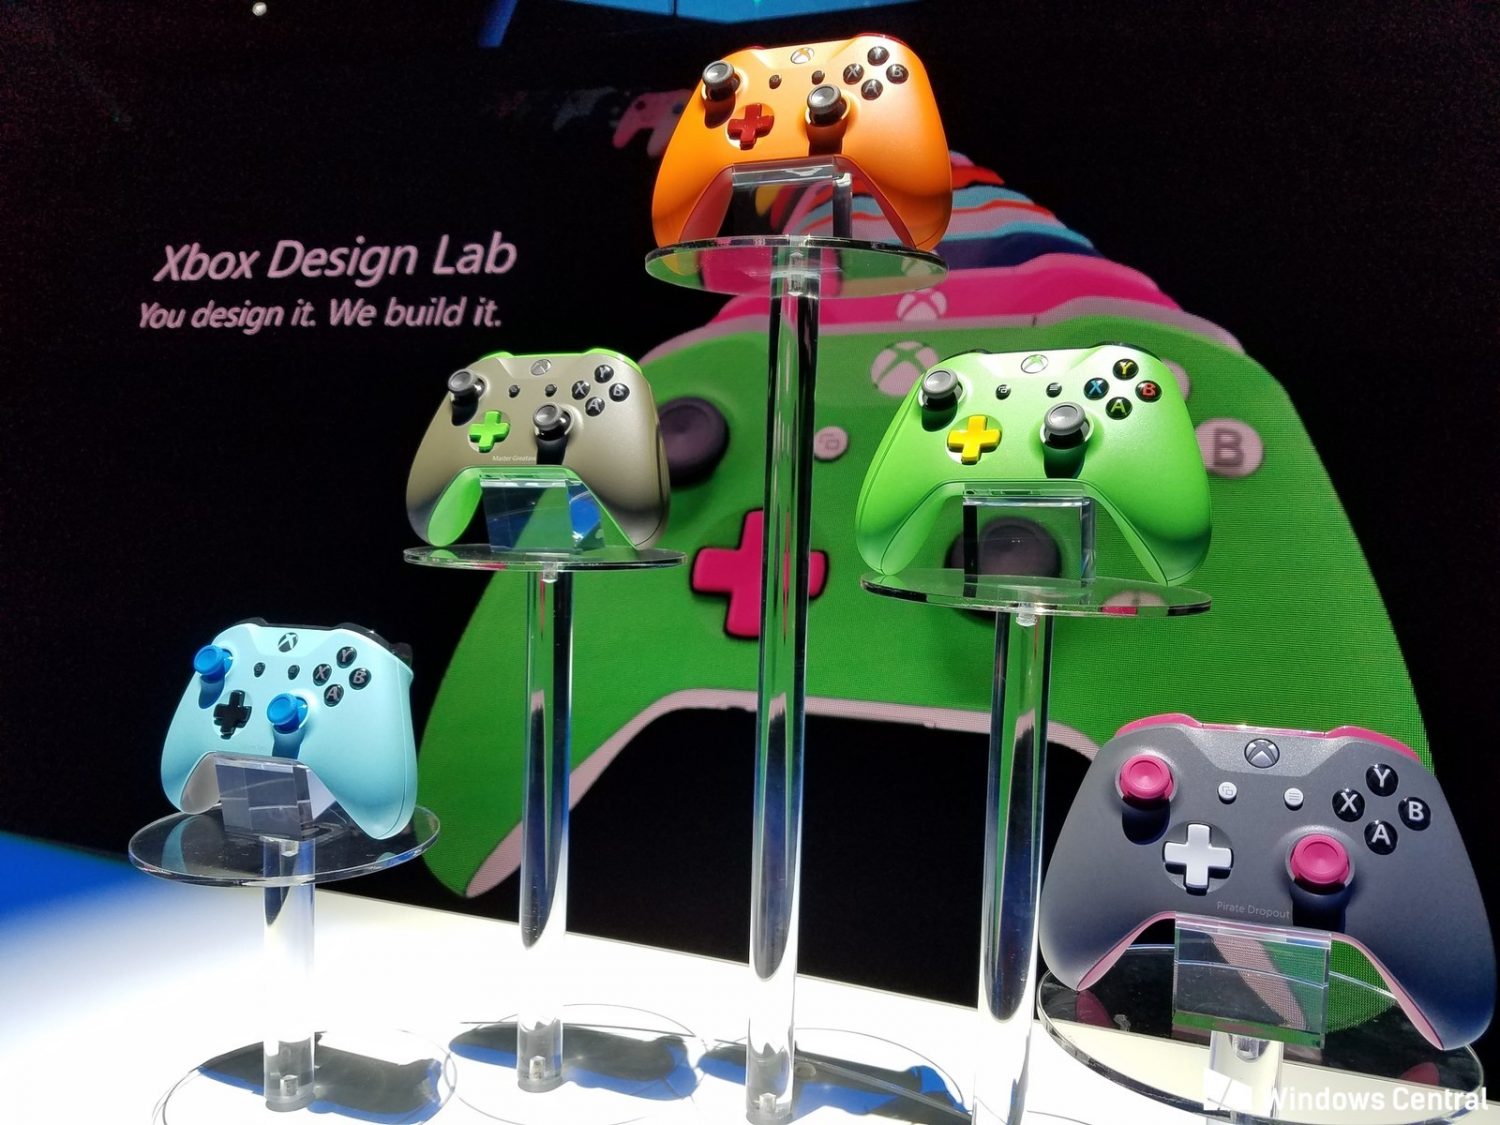 Controle Xbox One design lab